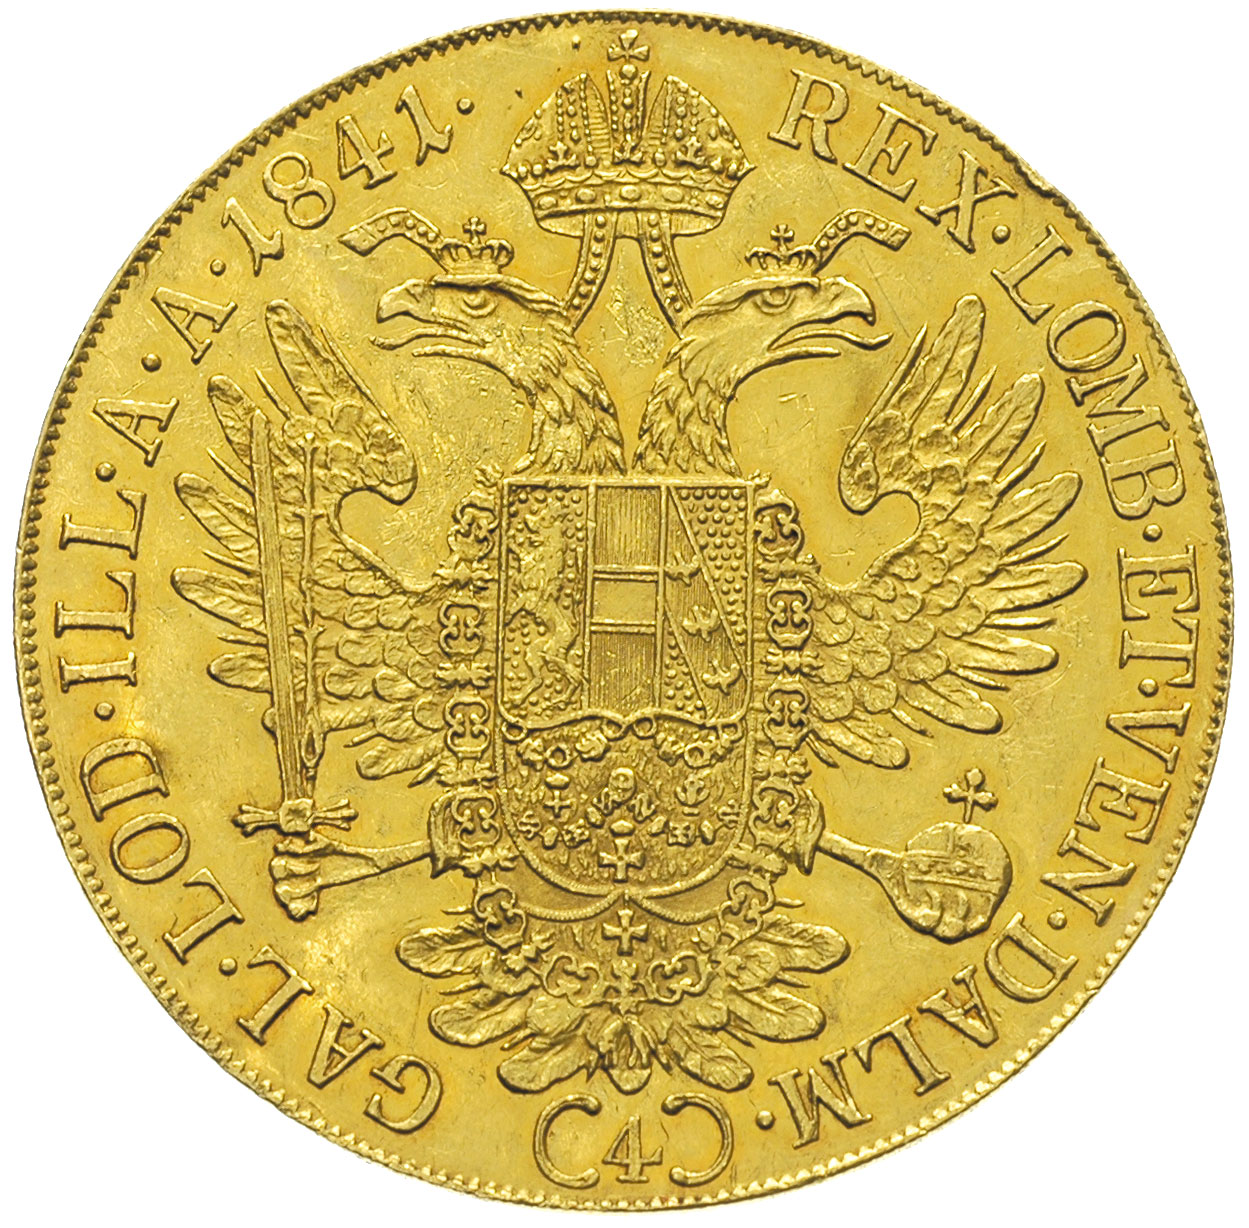 z-ote-i-srebrne-monety-aukcja-42-931-warszawskie-centrum-numizmatyczne